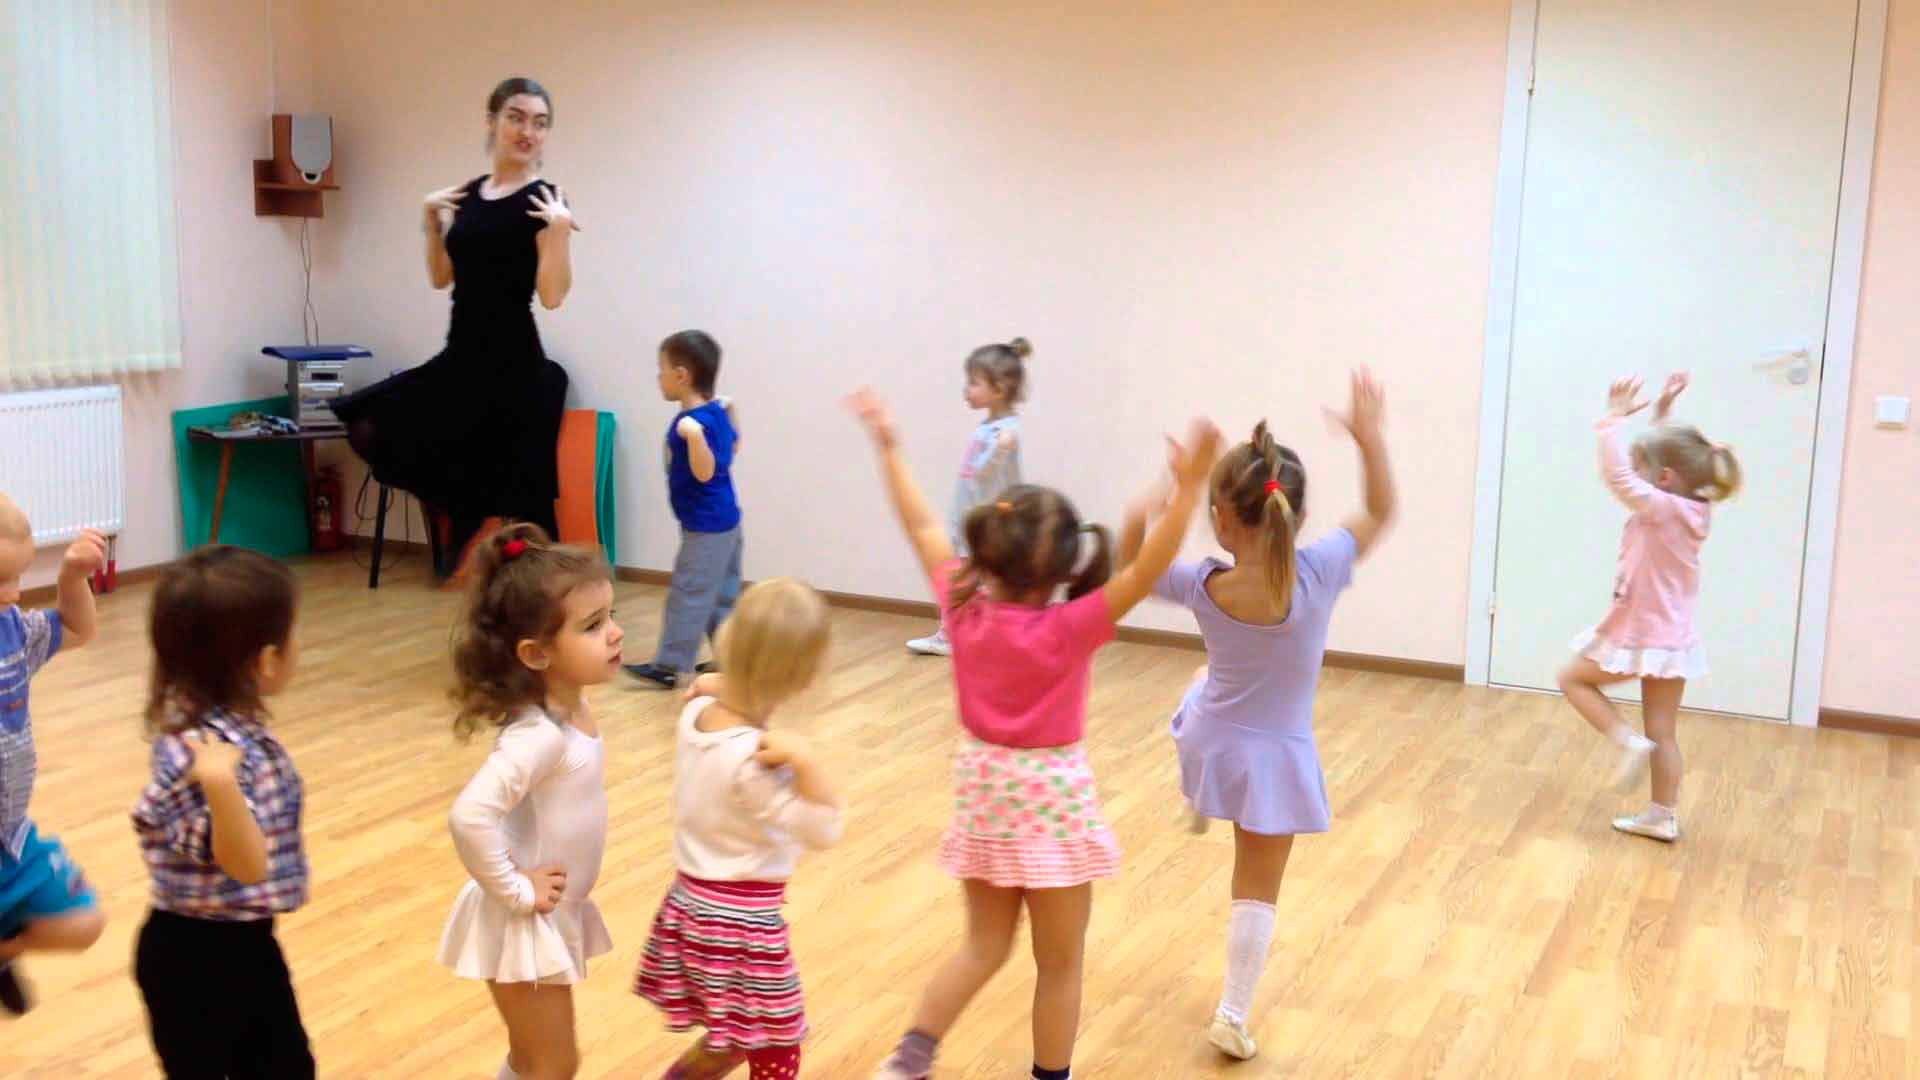 Современная музыка с движениями для детей. Танцы для детей в детском саду. Танцы для детей в ДОУ. Малыши на танцах в детском саду. Танцевально игровая гимнастика в детском саду.